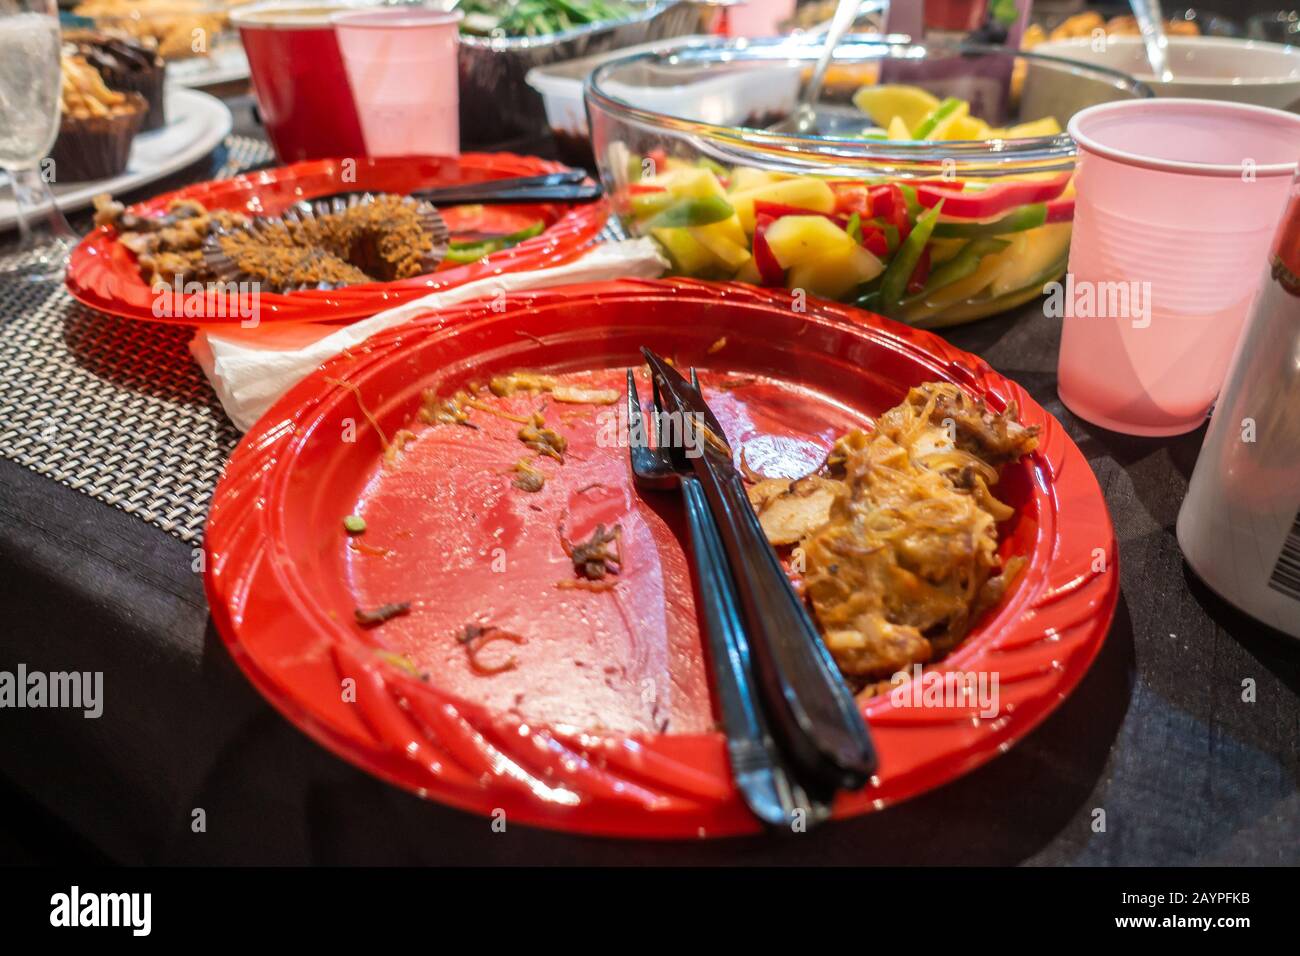 https://c8.alamy.com/compes/2aypfkb/plato-desechable-de-plastico-rojo-en-una-mesa-despues-de-comer-comida-bufe-en-una-fiesta-2aypfkb.jpg